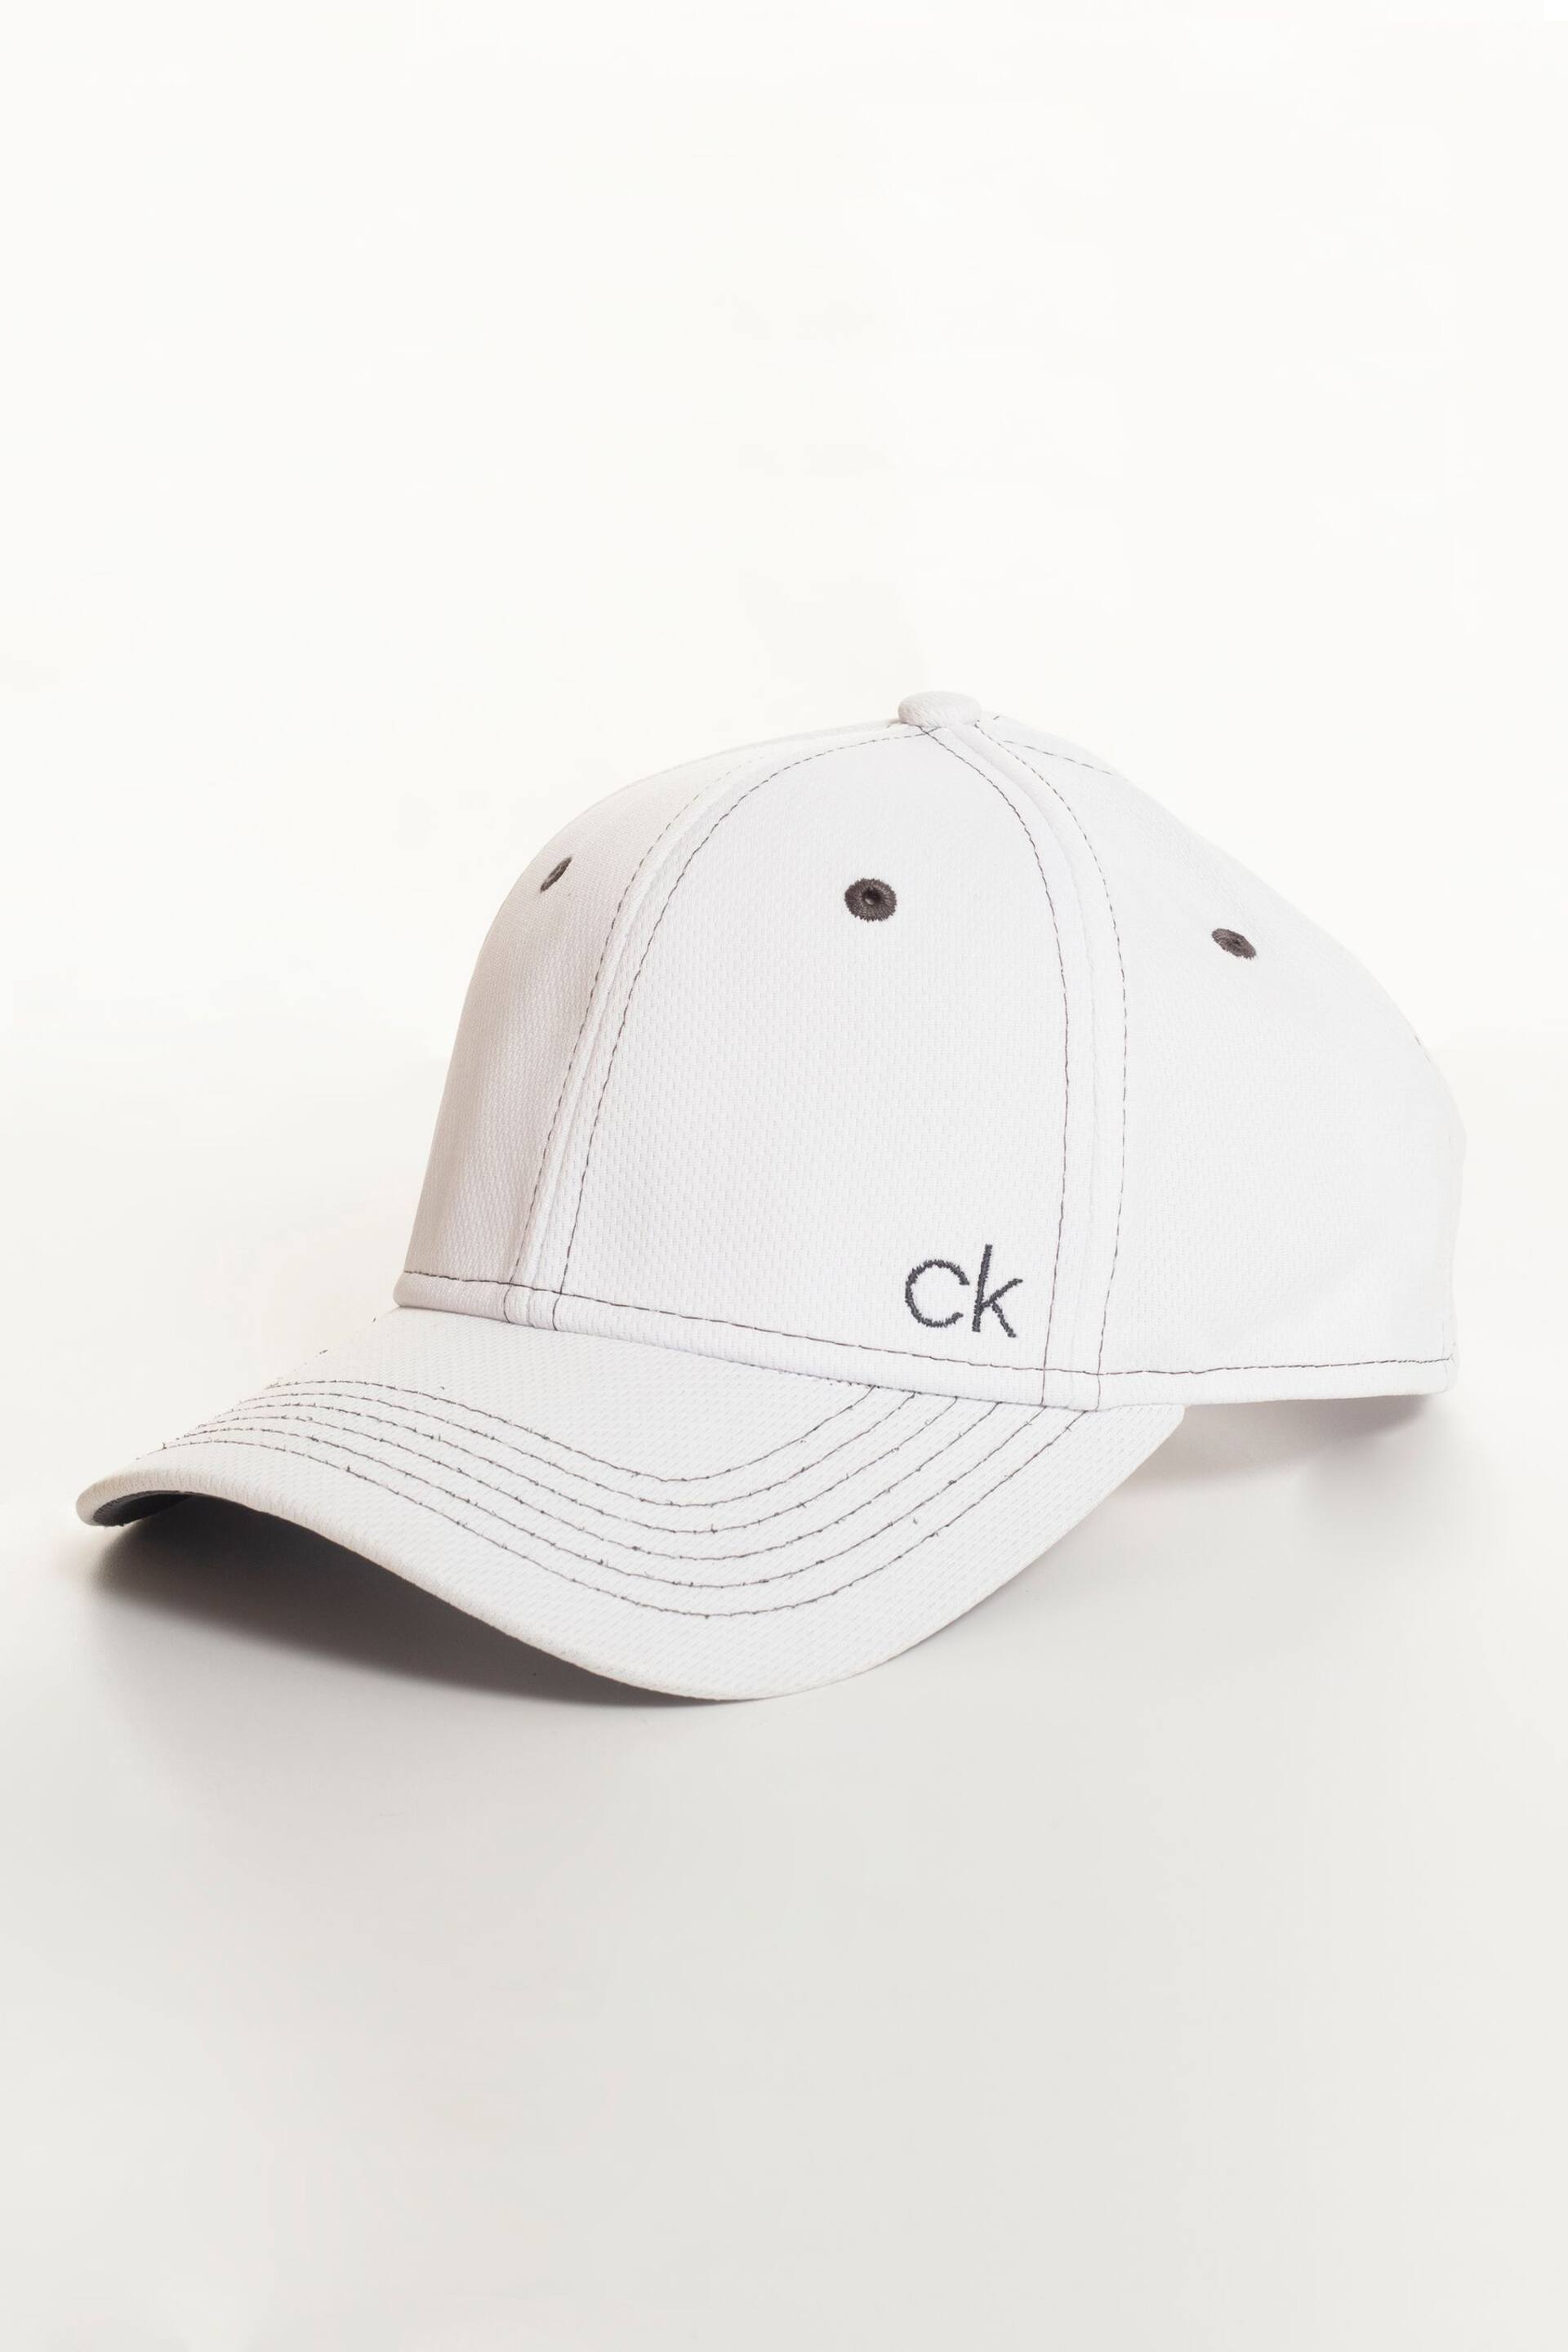 Calvin Klein Golf Tech Baseball White Cap - Image 1 of 5